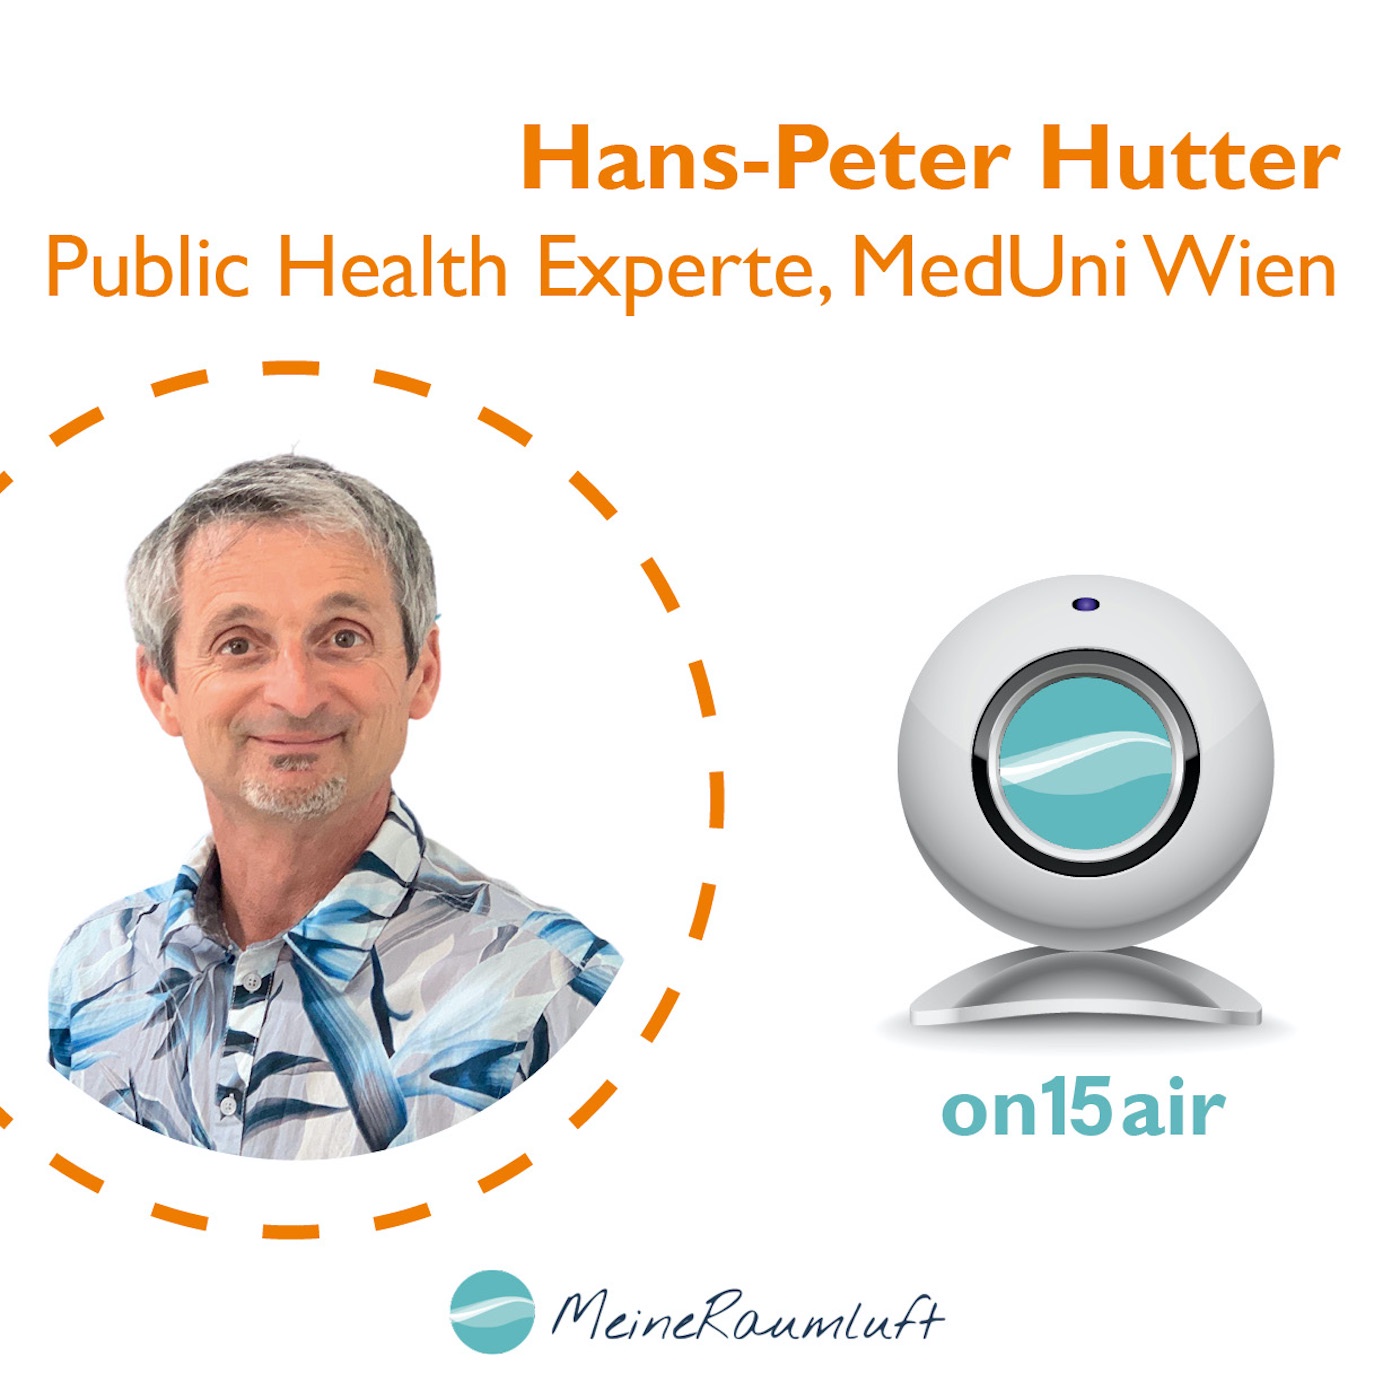 Hans-Peter Hutter